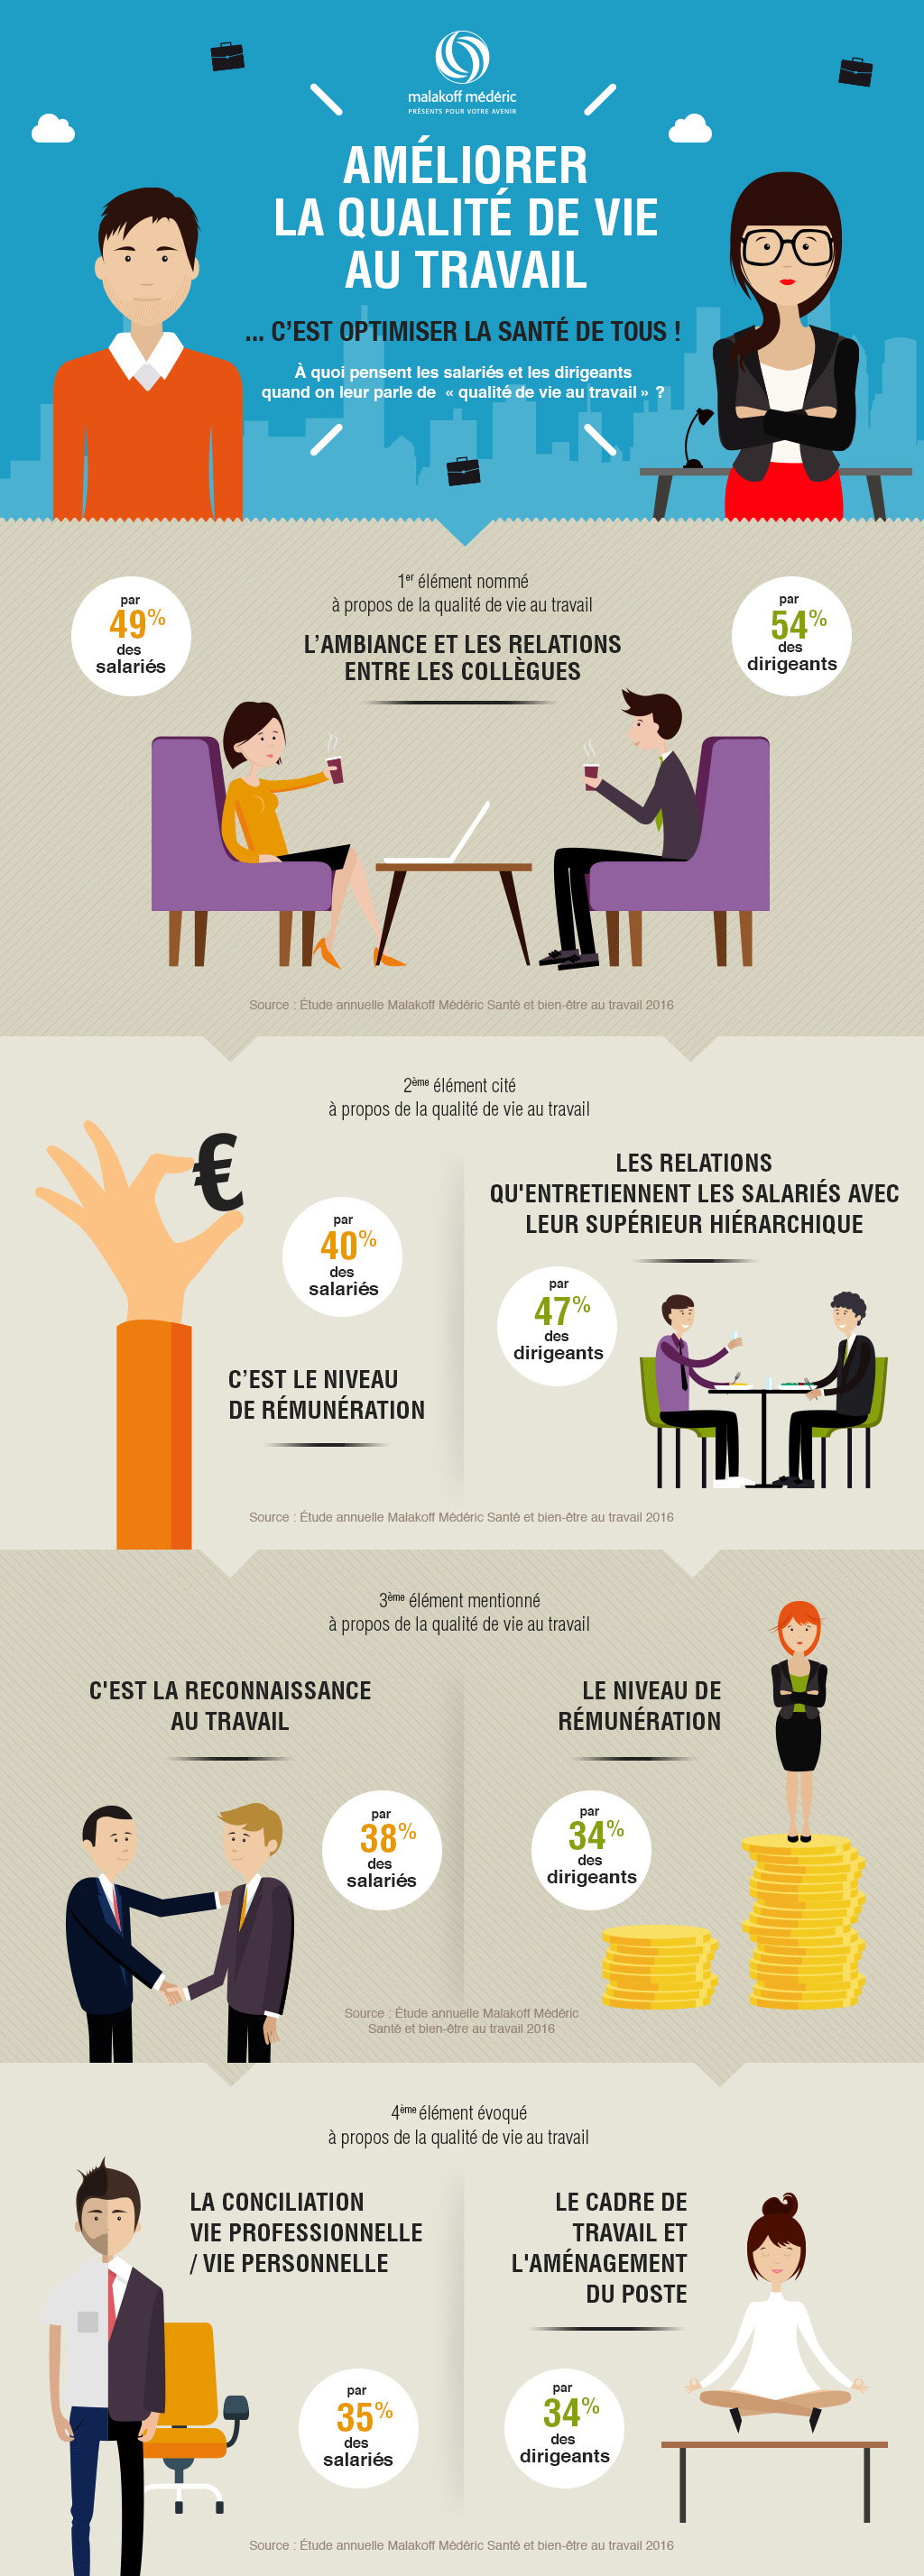 Infographie Malakoff Mederic sur la qualité de vie au travail